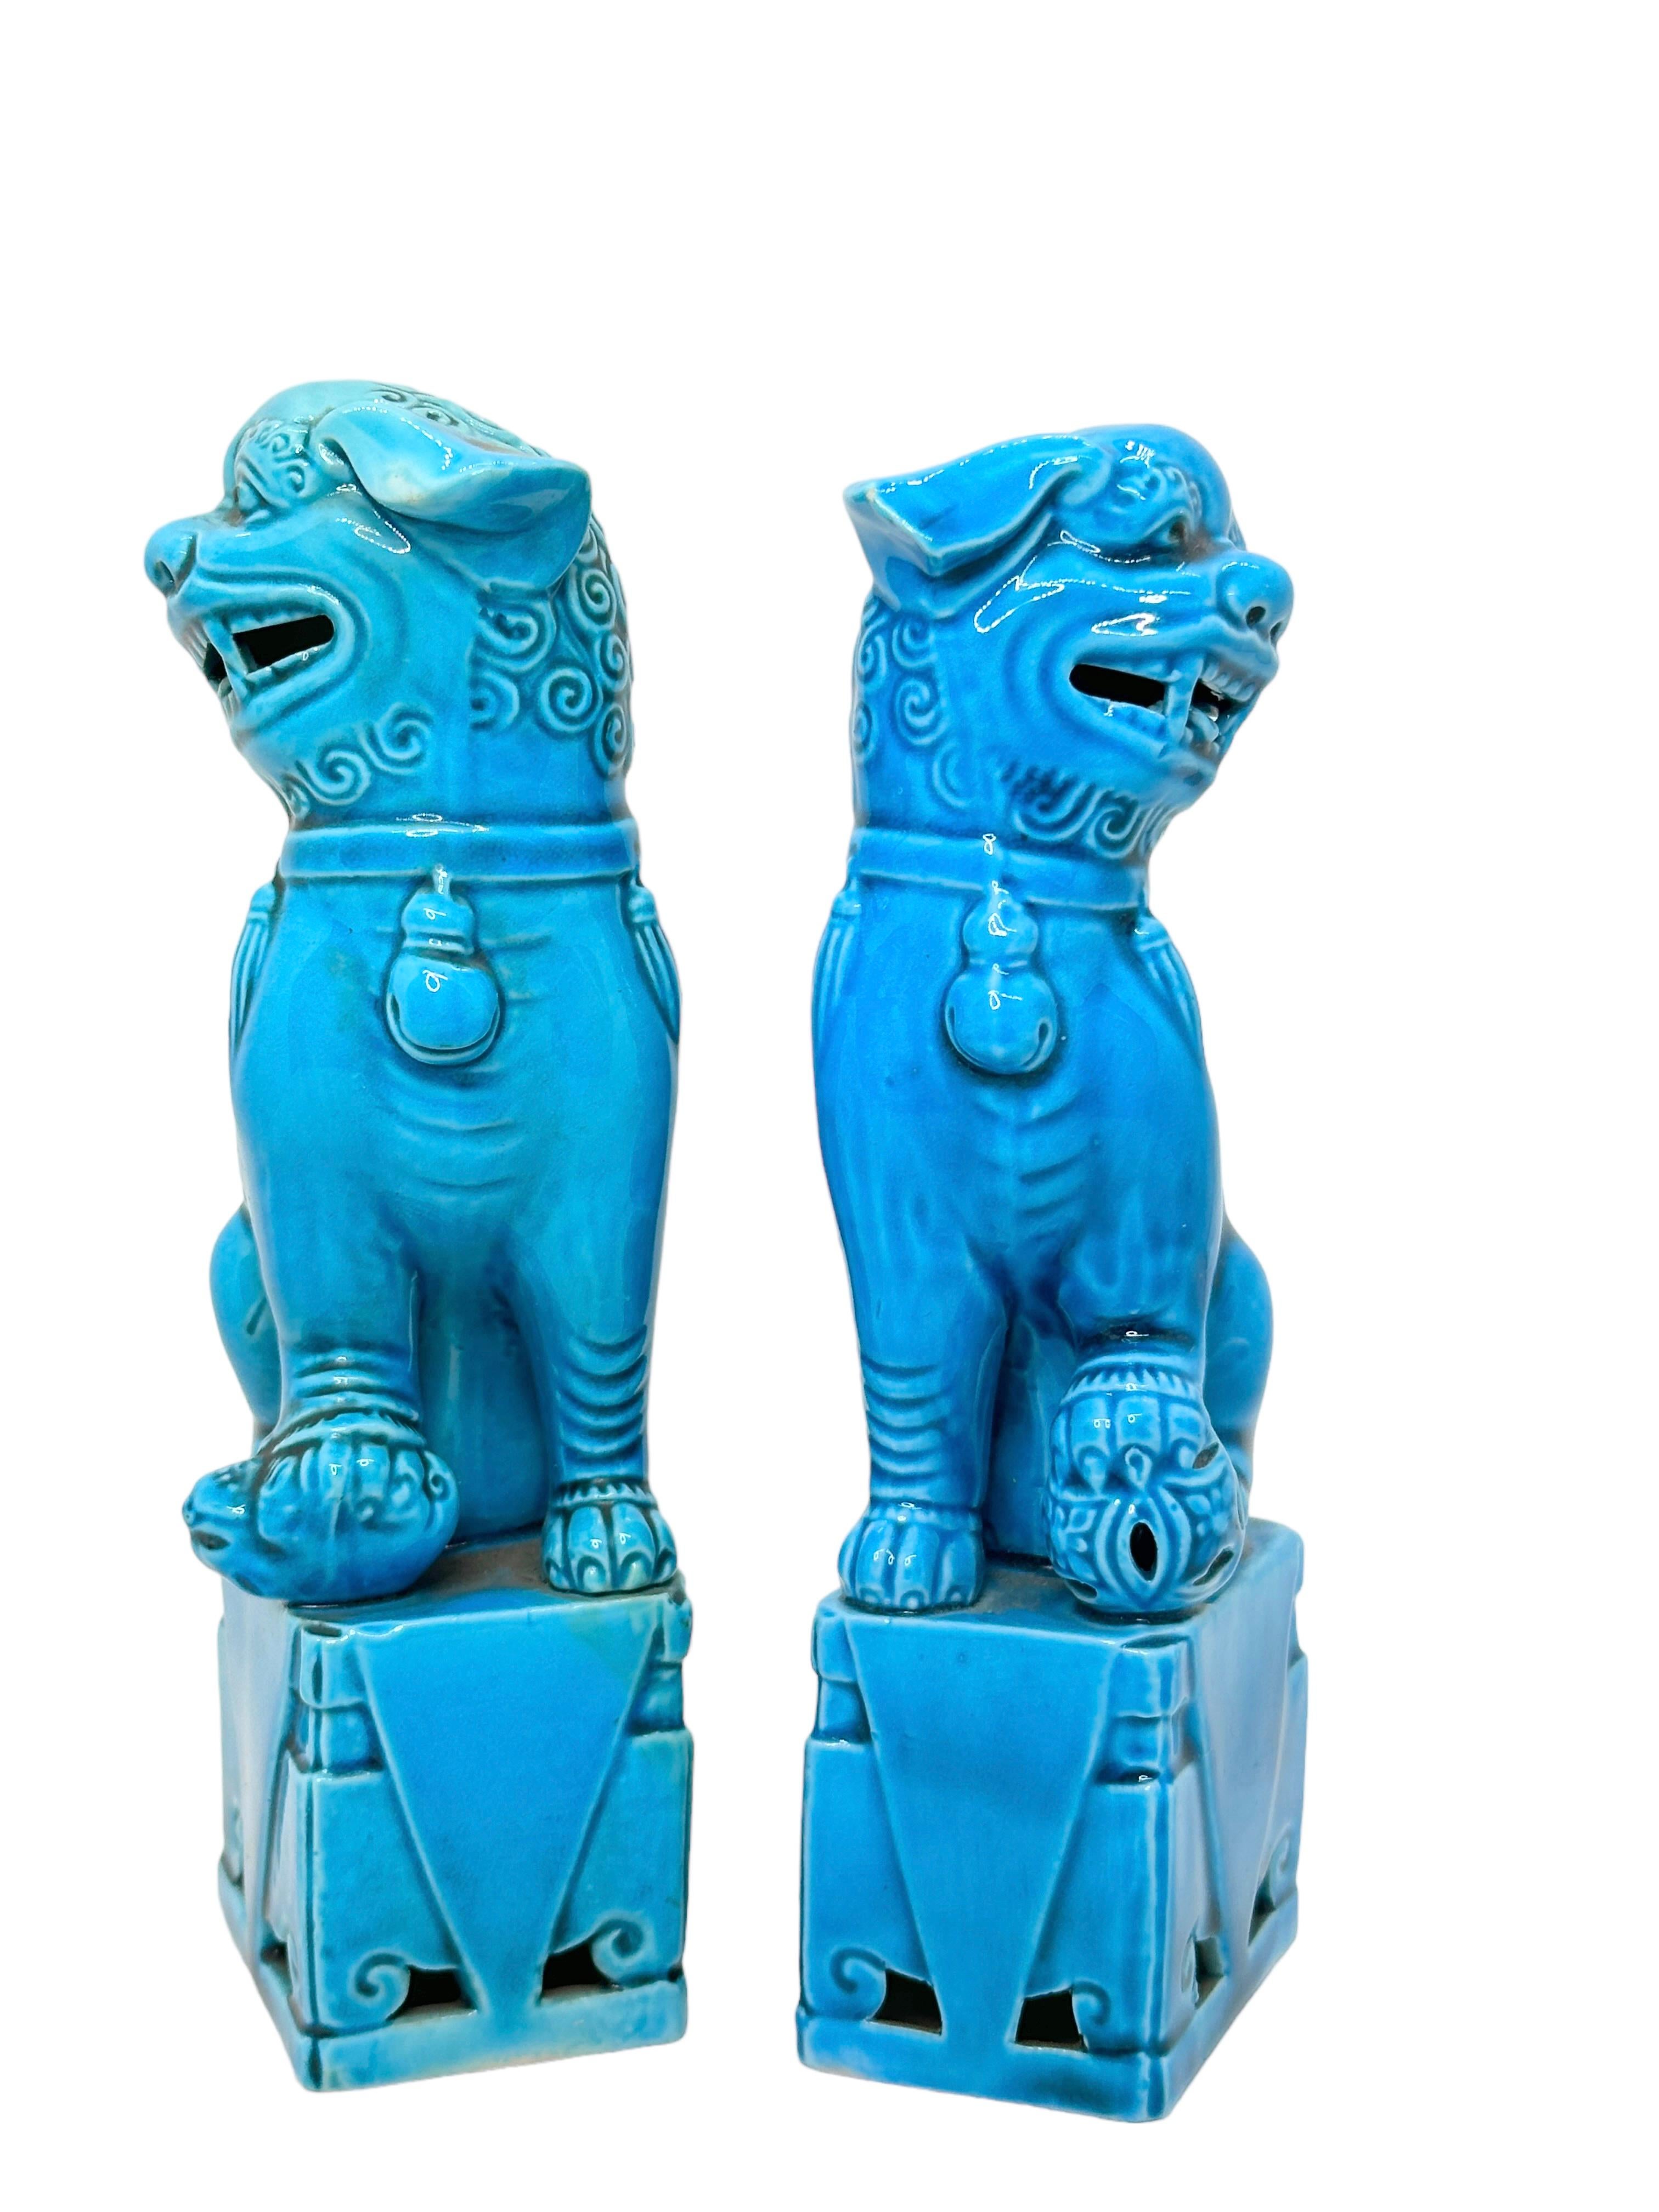 Une très belle paire de chiens foo vintage, de taille moyenne, en céramique bleu turquoise, vers les années 1960. Excellent état et patine ; fait un objet de décoration amusant dans n'importe quelle pièce !